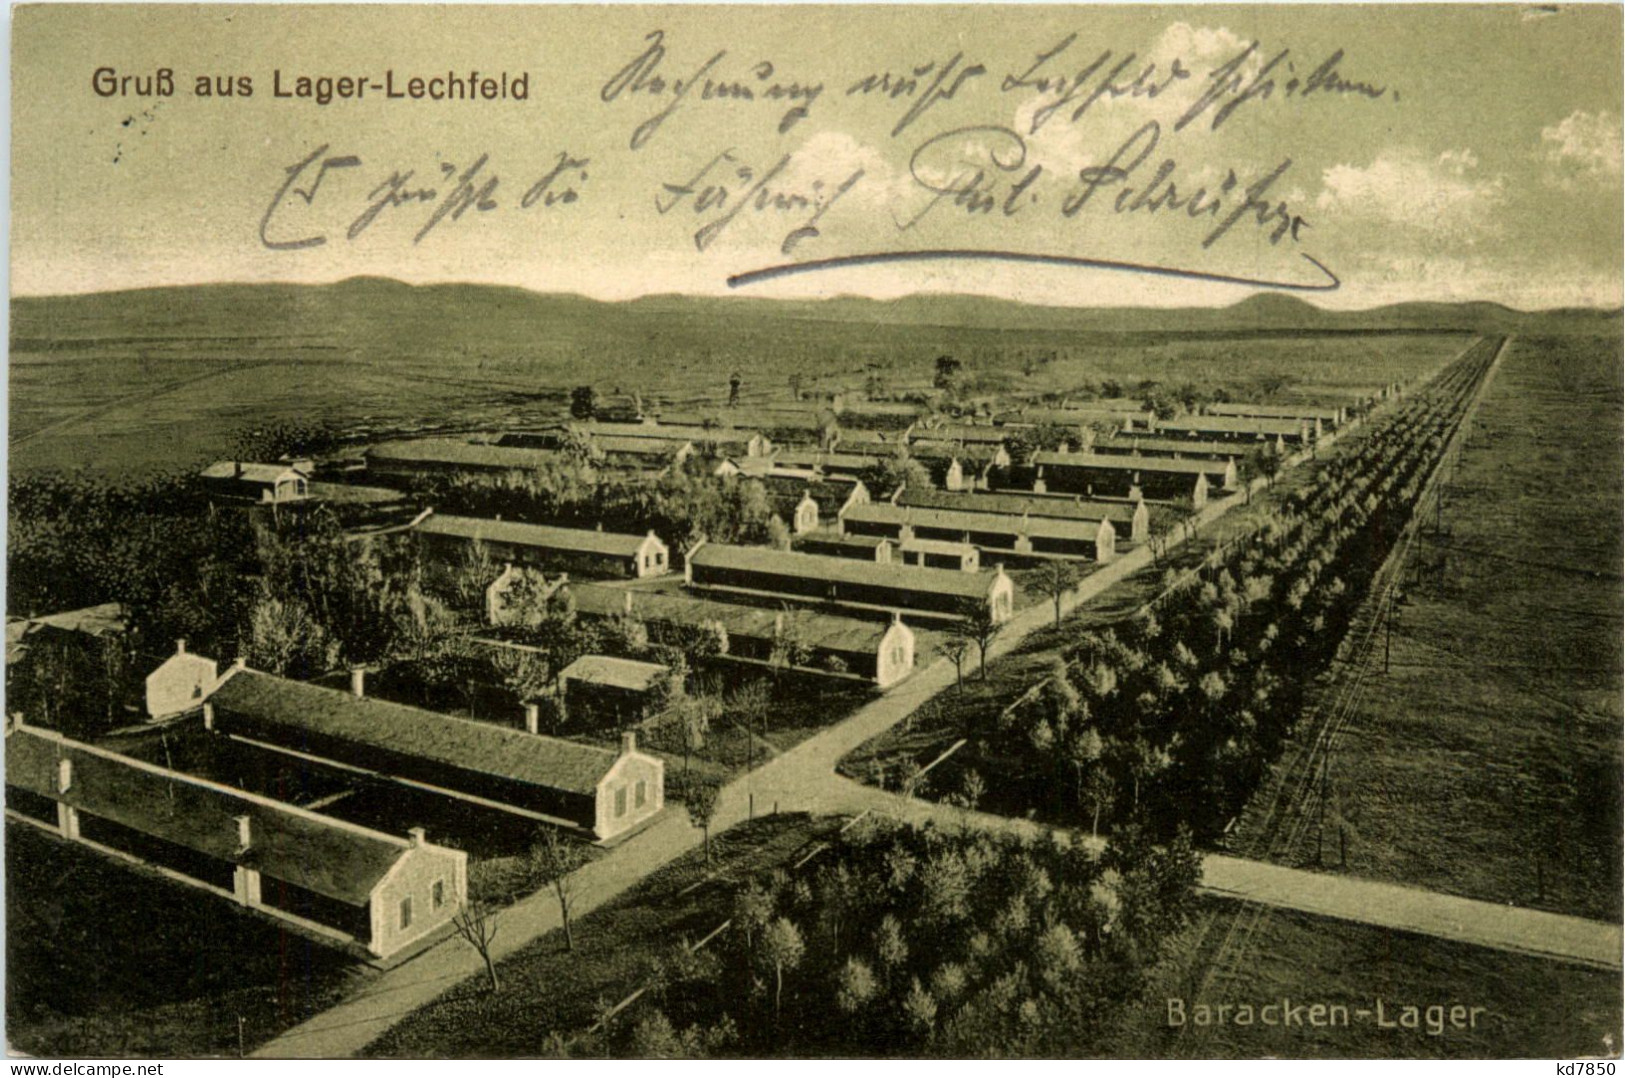 Lager-Lechfeld, Baracken-Lager - Augsburg